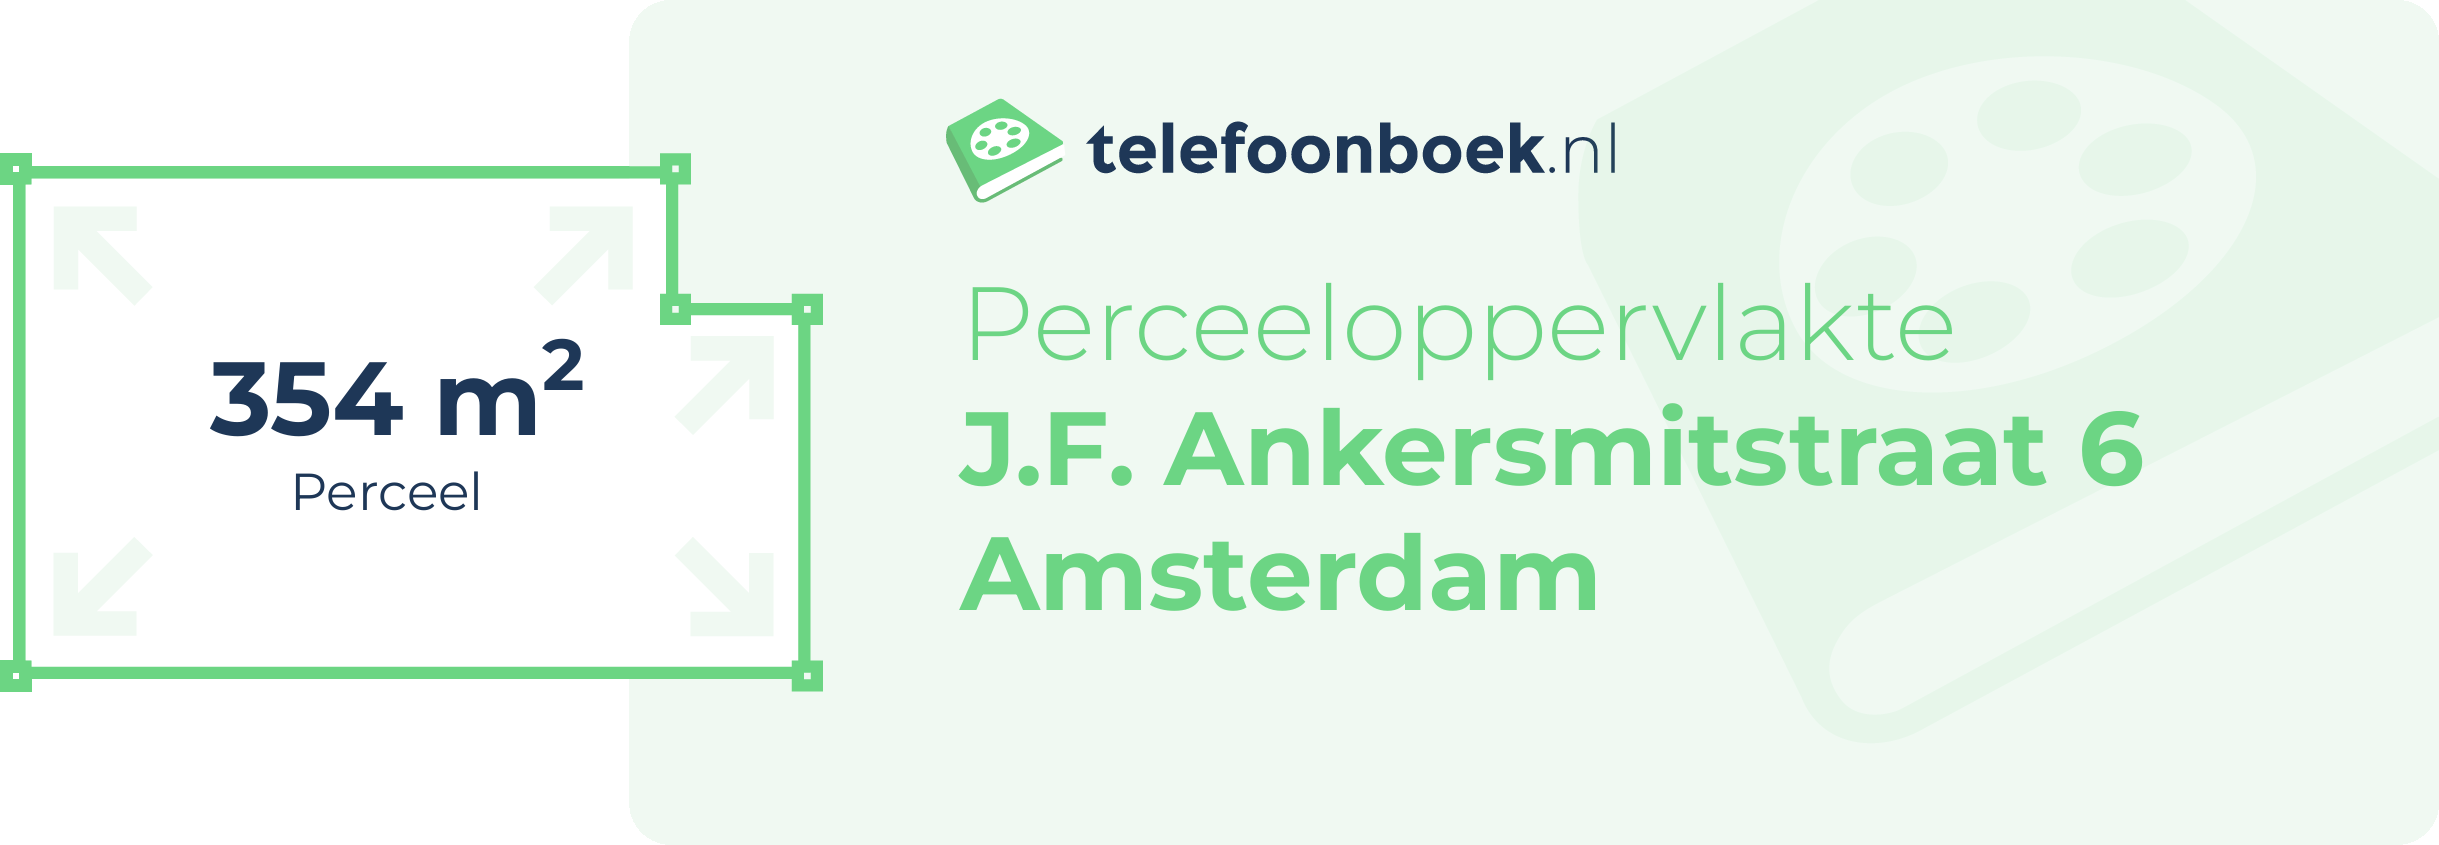 Perceeloppervlakte J.F. Ankersmitstraat 6 Amsterdam